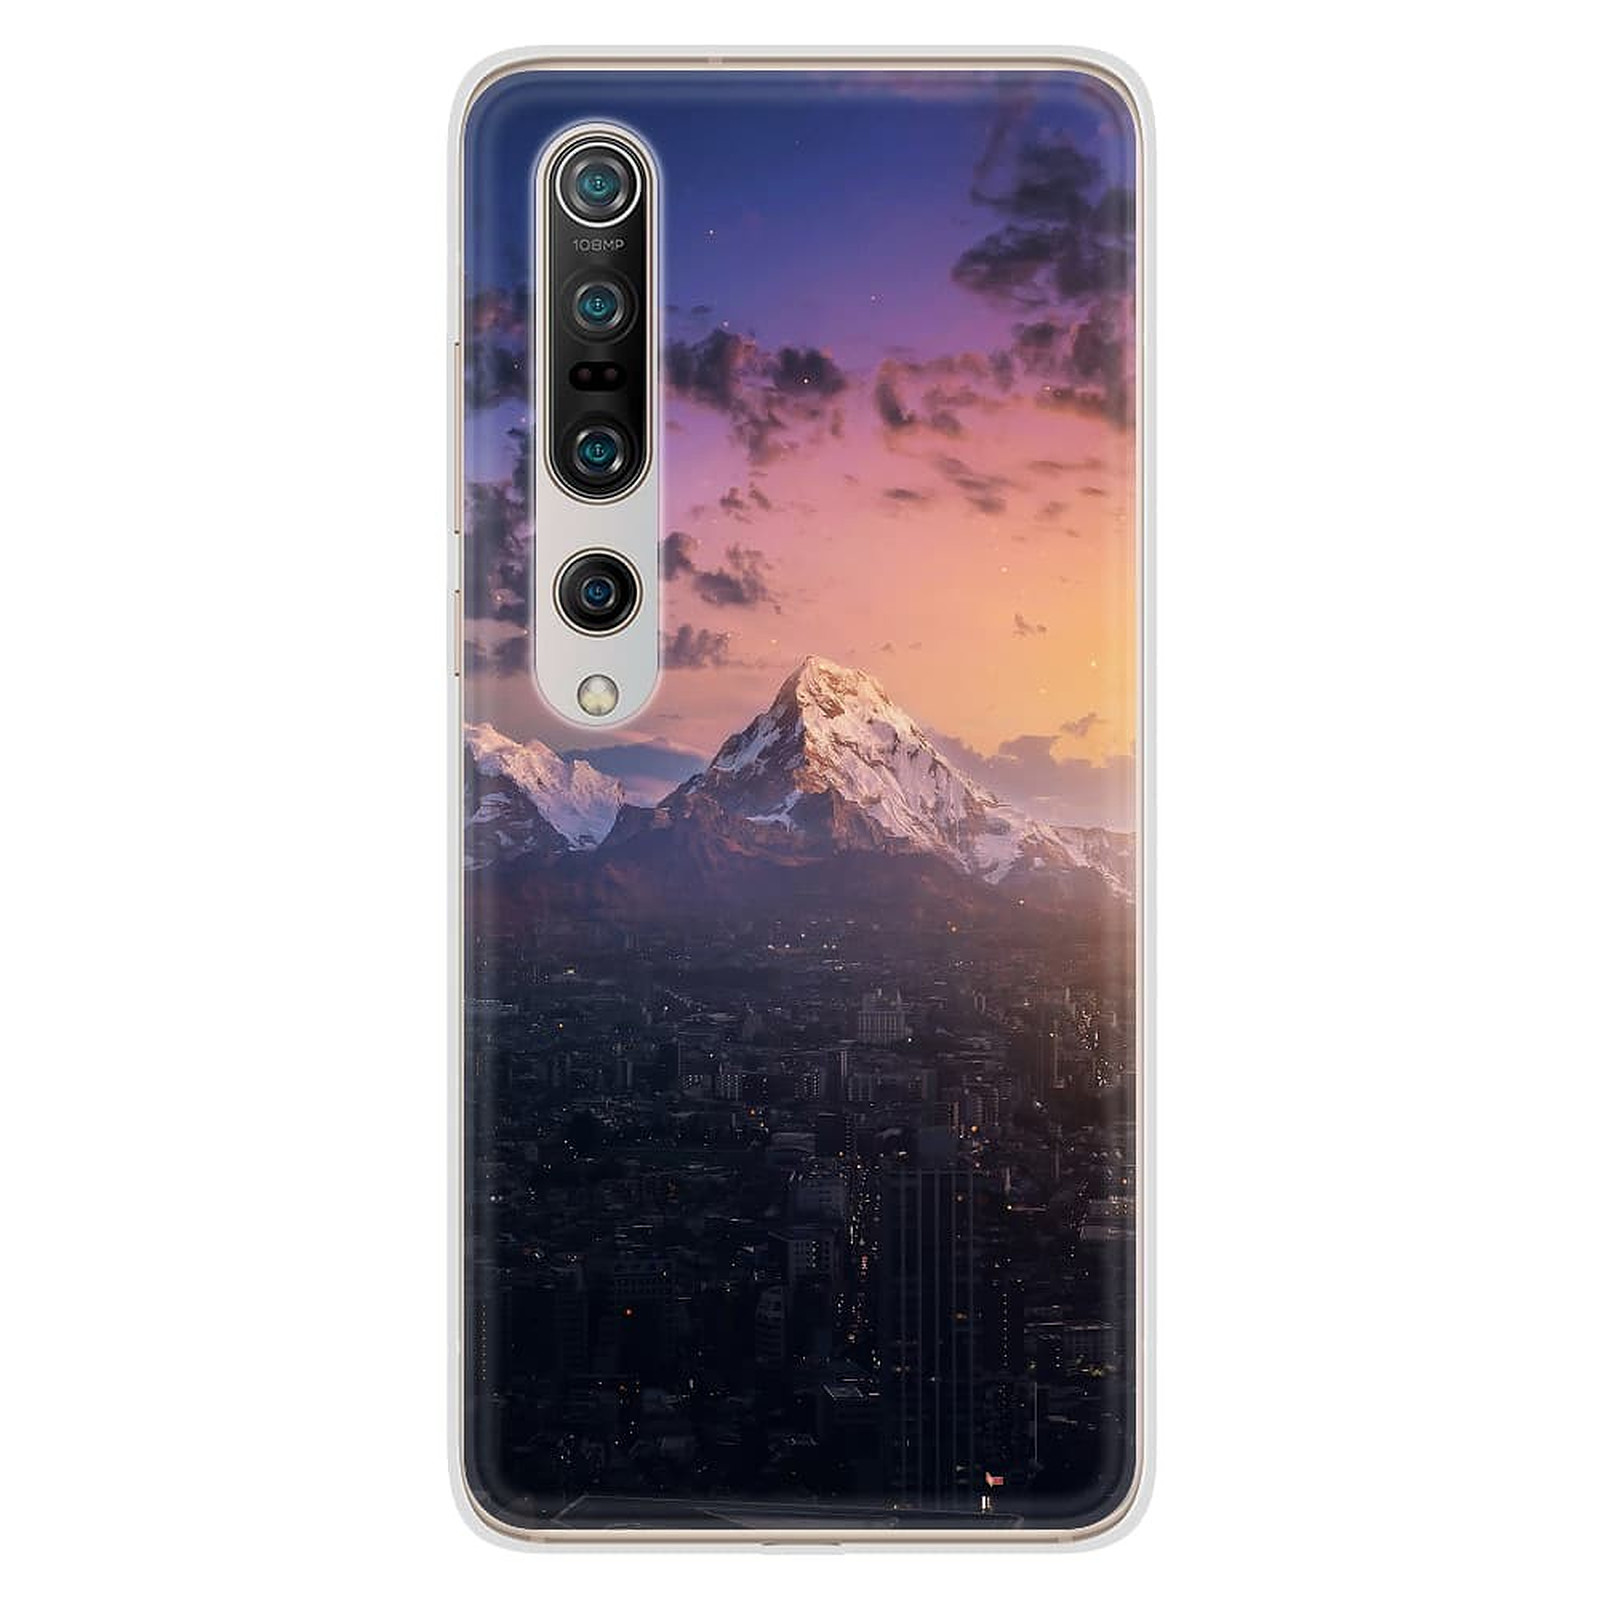 1001 Coques Coque silicone gel Xiaomi Mi 10 / Mi 10 pro motif Montagnes urbaines - Coque telephone 1001Coques